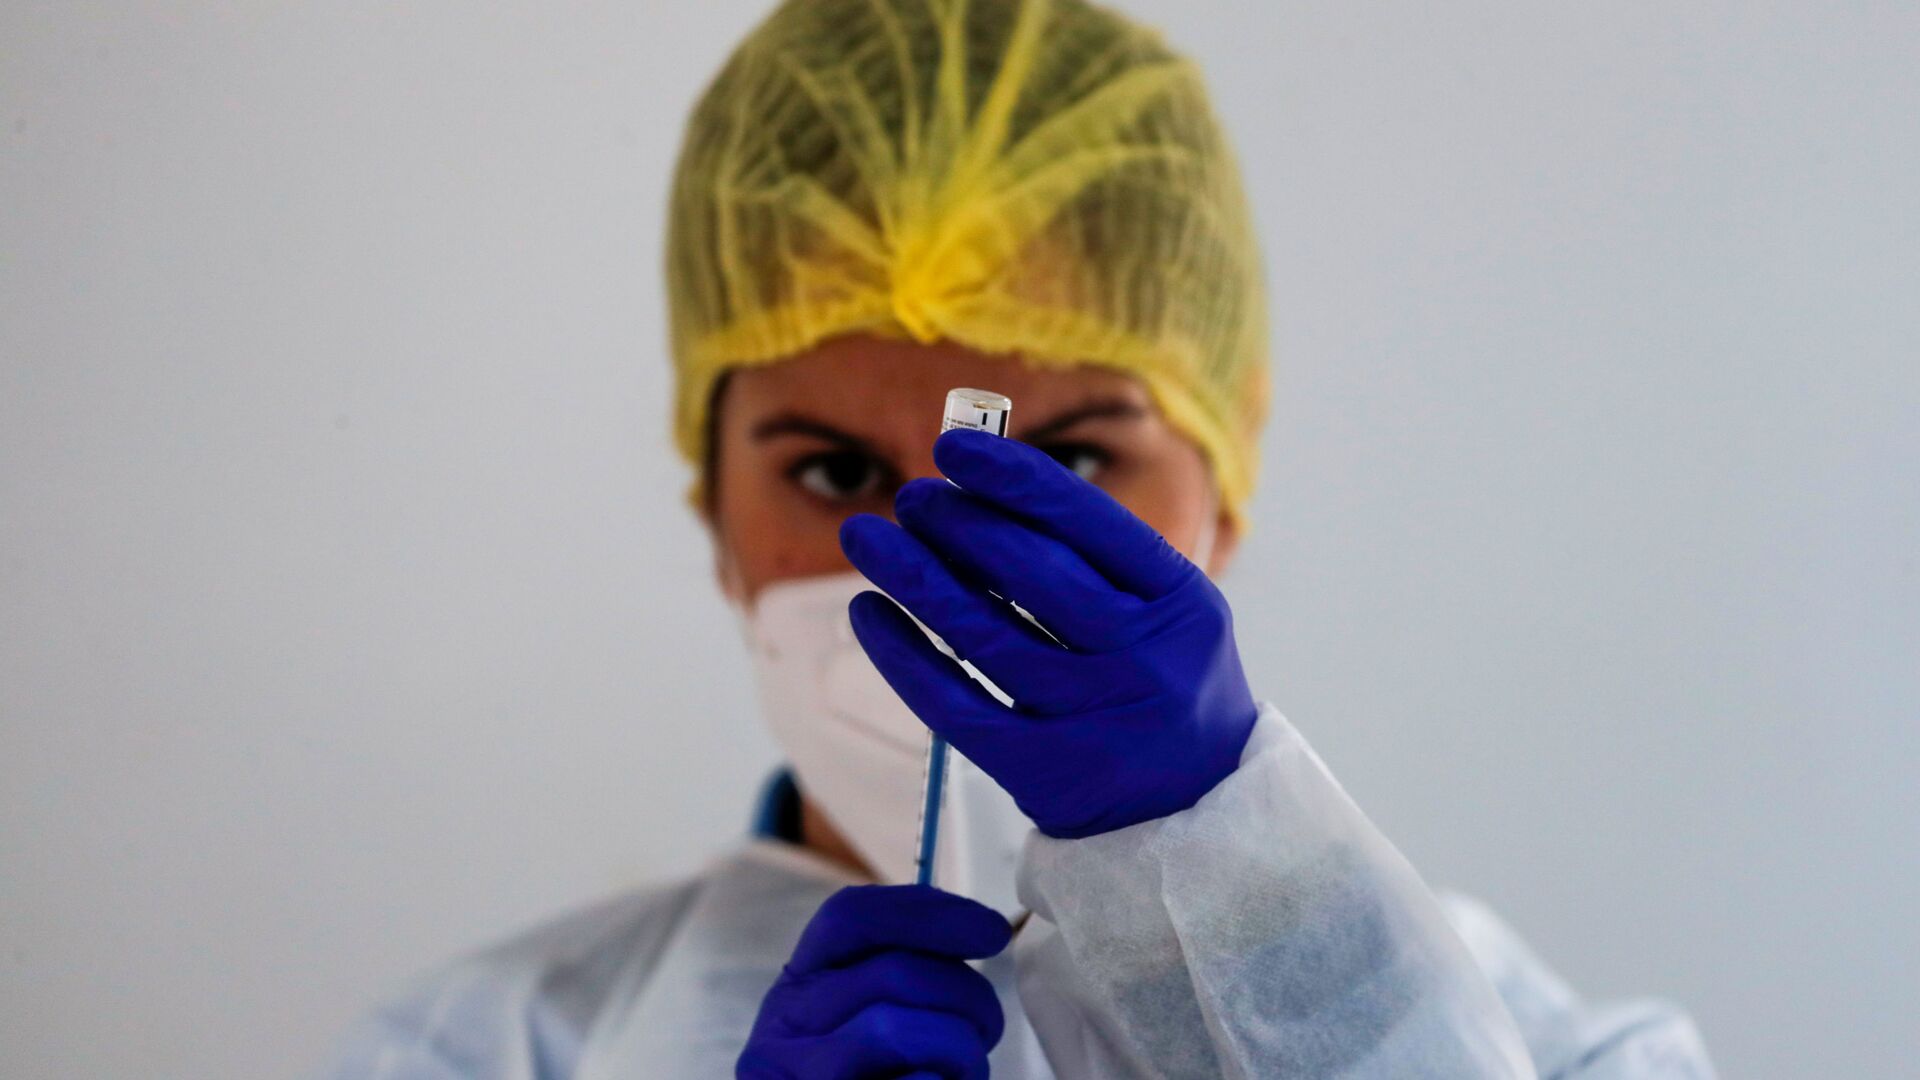 Медицинский работник готовит дозу вакцины Pfizer-BioNTech во время массовой вакцинации в Ронде, Испания - Sputnik Таджикистан, 1920, 09.12.2021